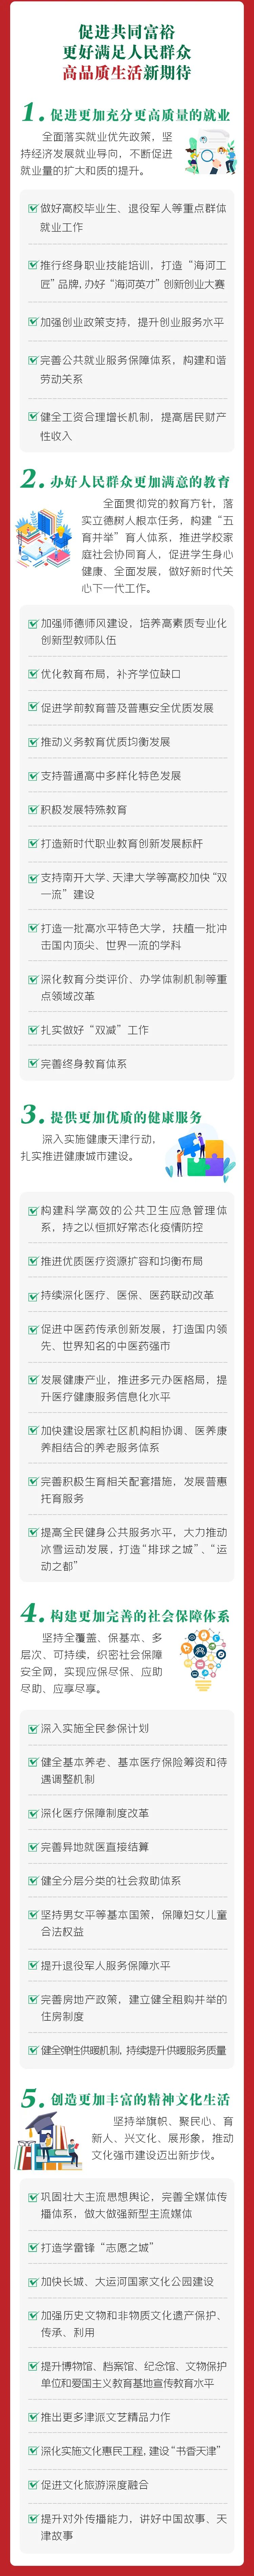 【聚焦党代会】一图读懂天津市第十二次党代会报告